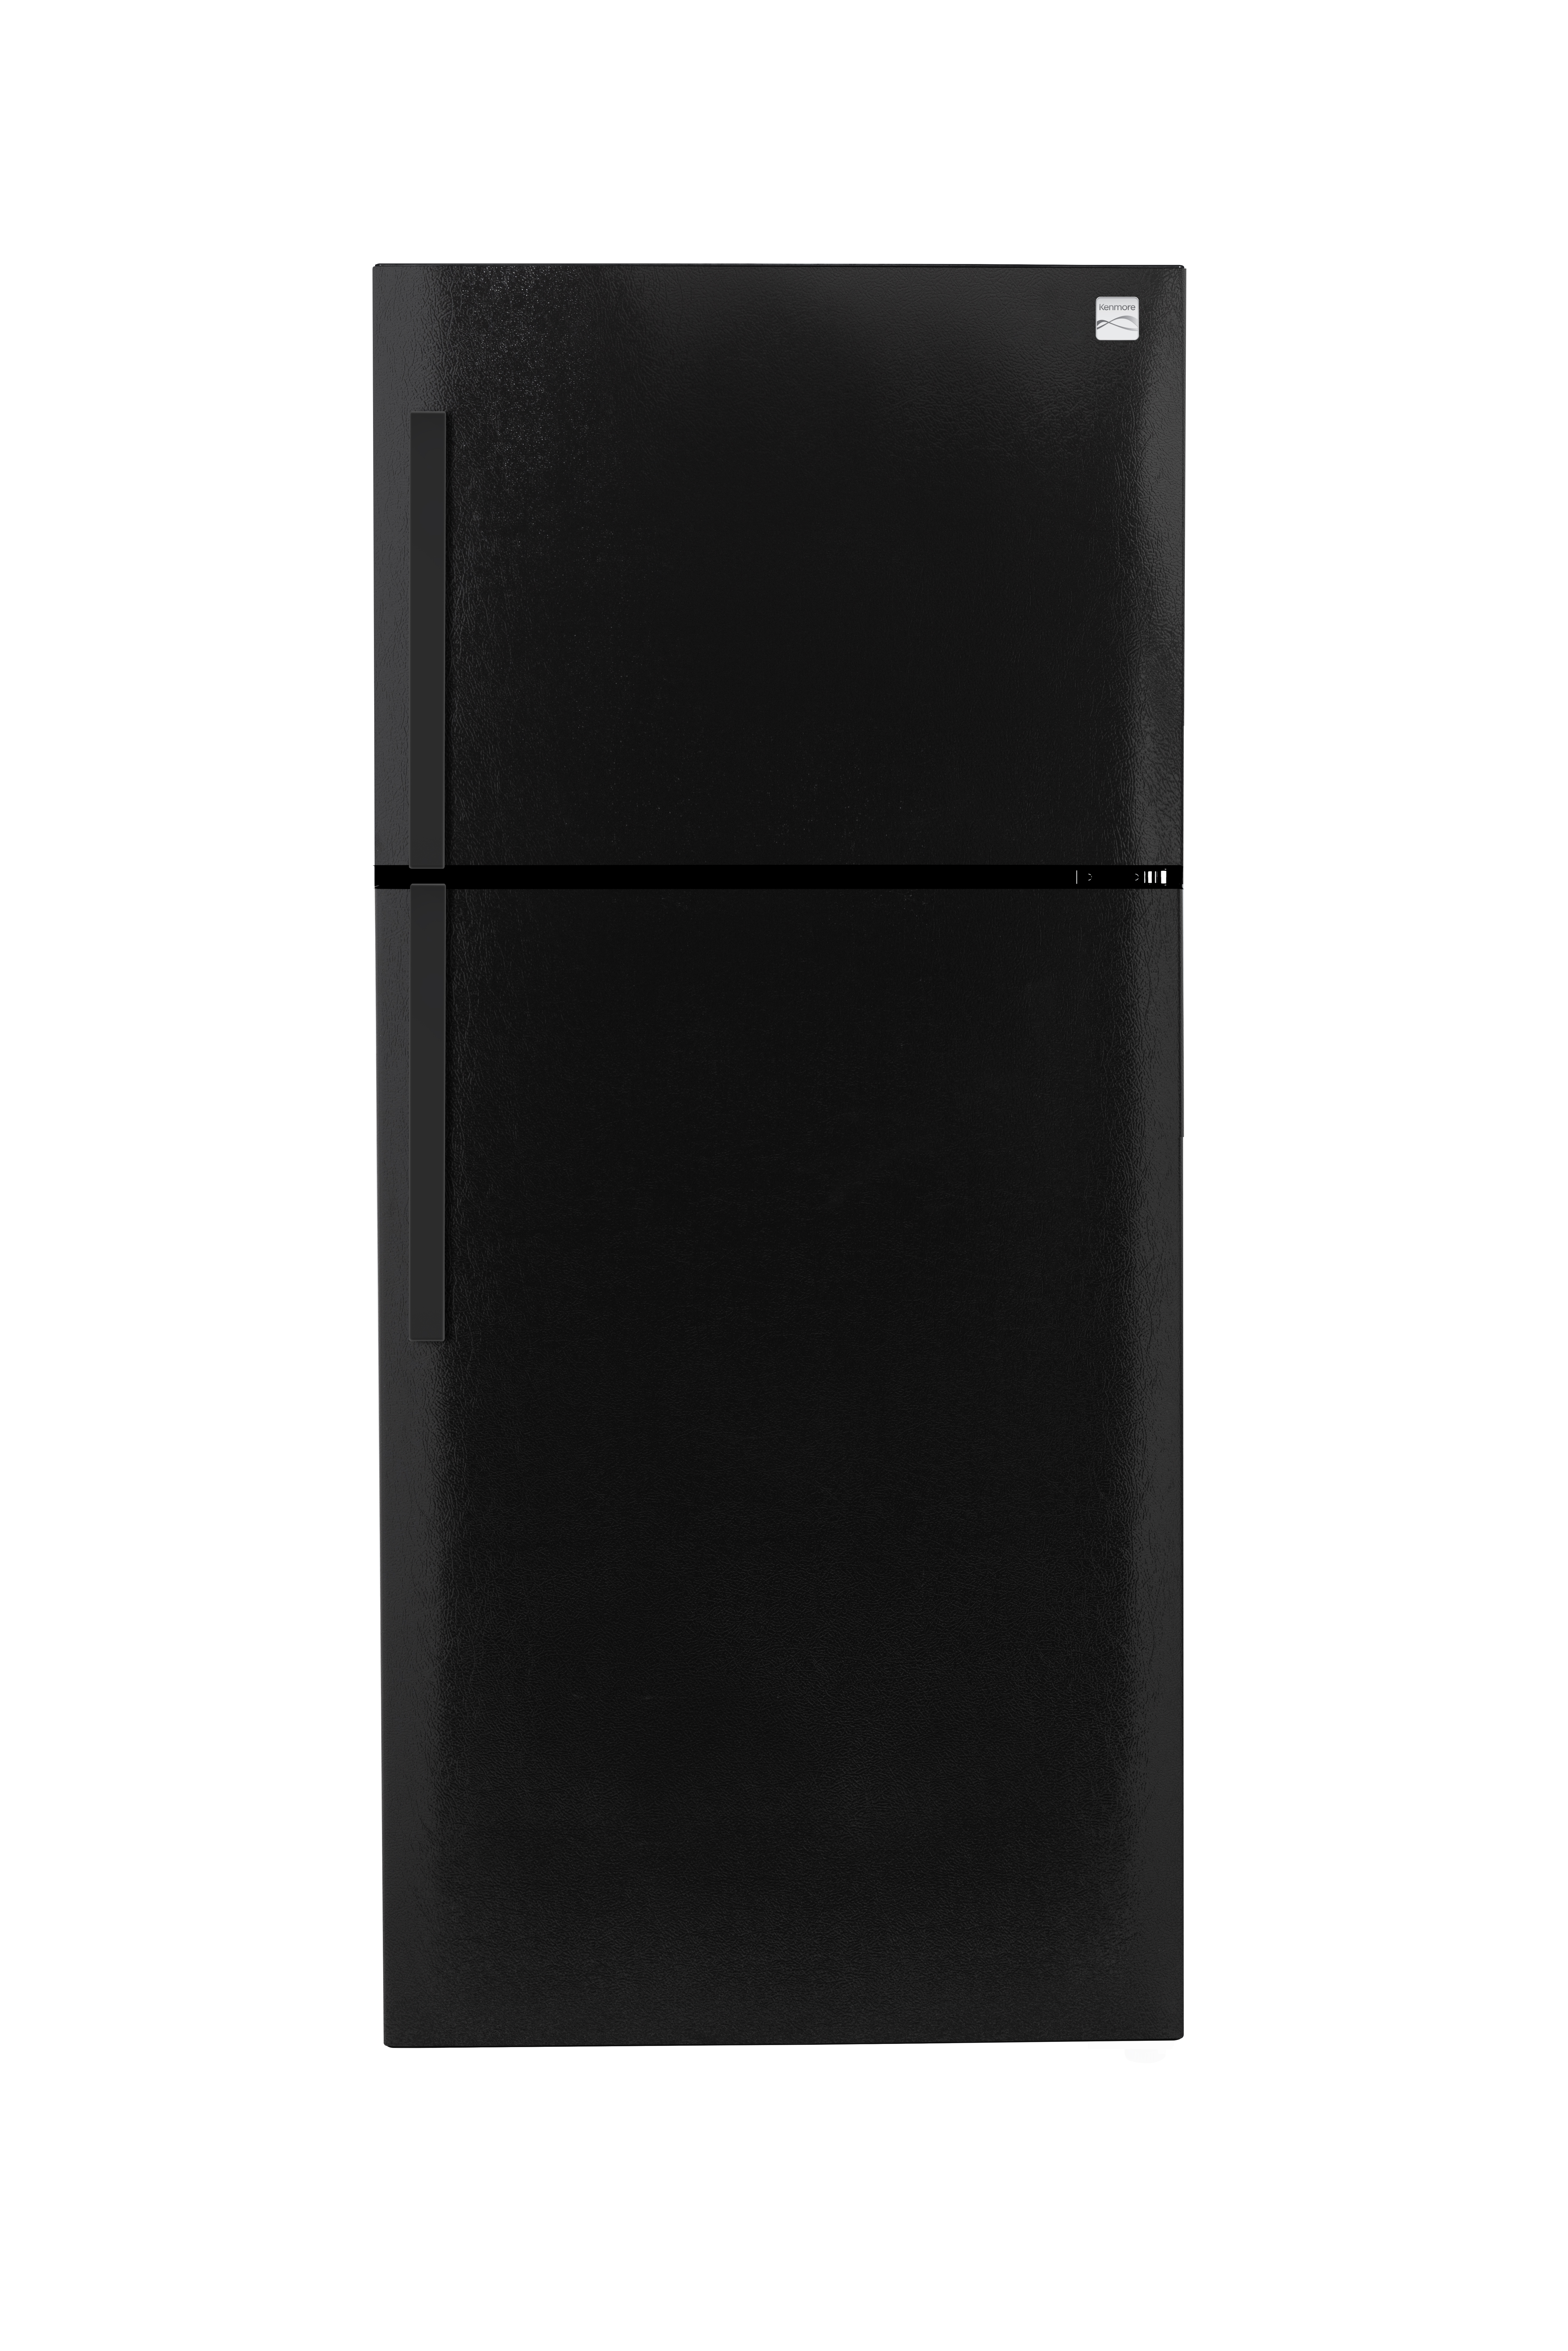 Kenmore 60769  18.3 cu. ft. Deluxe Top-Freezer Refrigerator eStar Certified - Textured Black